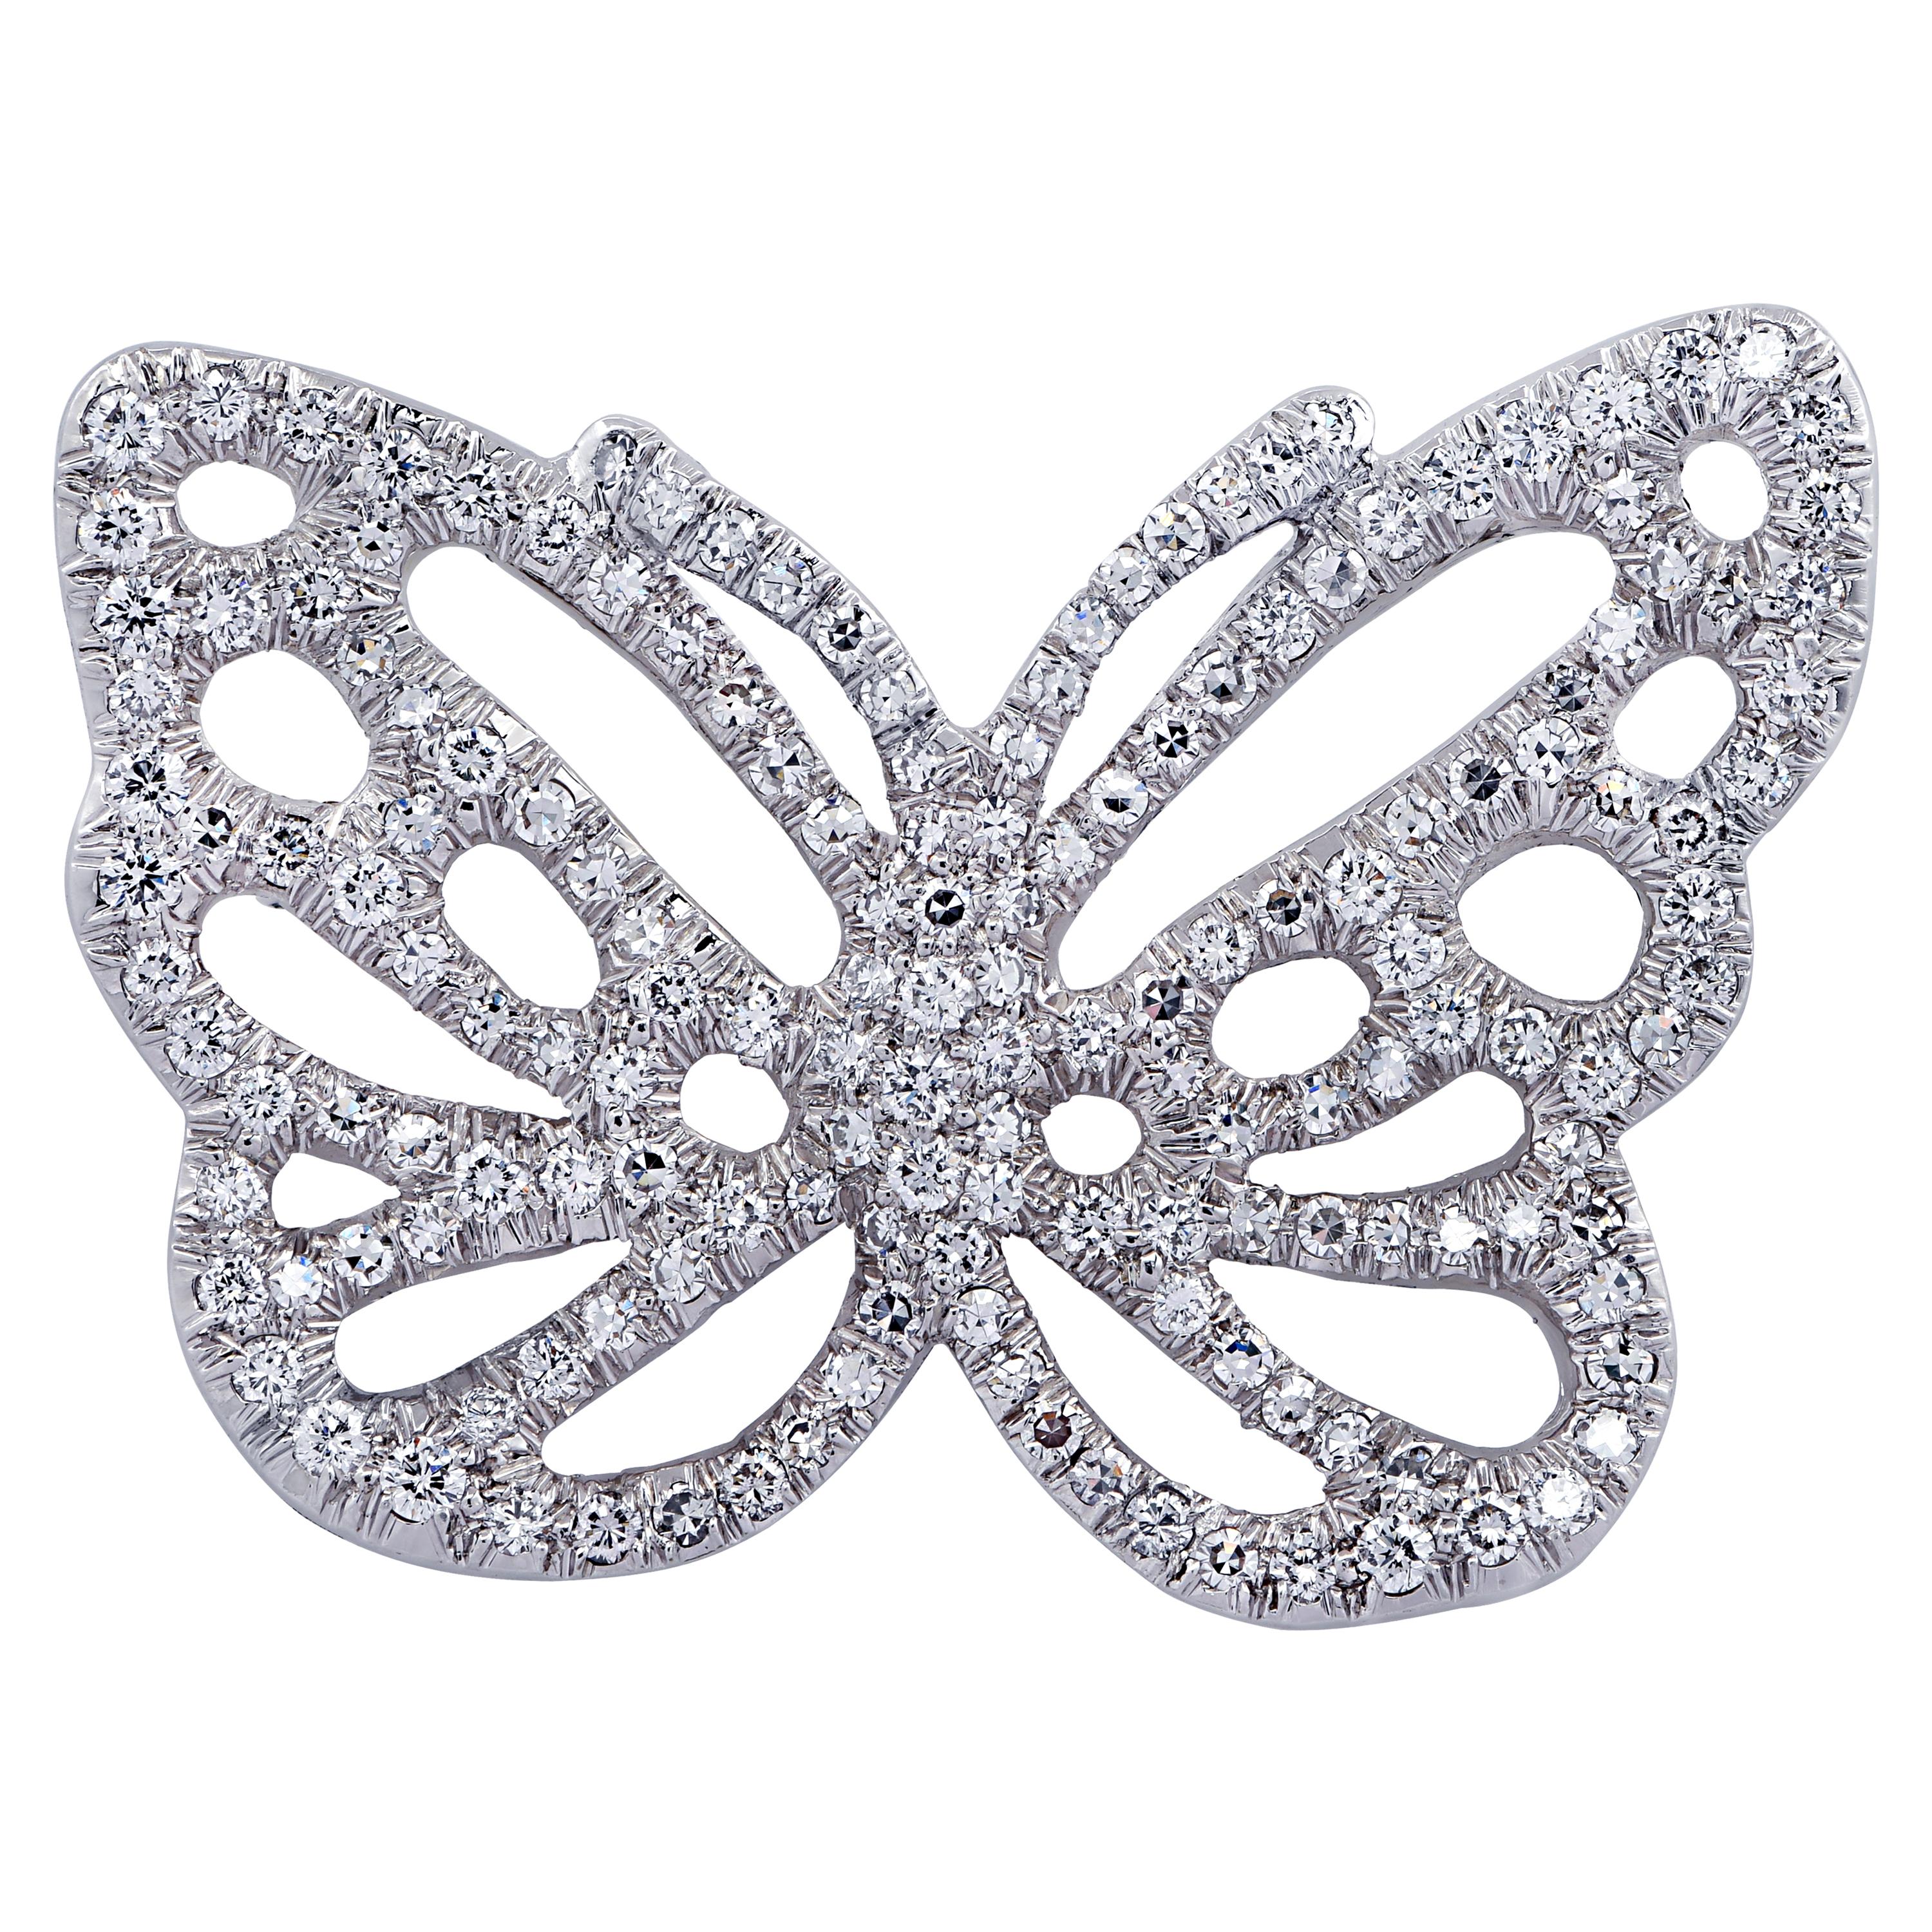 Angela Cummings & Tiffany & Co. Diamond Butterfly Brooch Pin